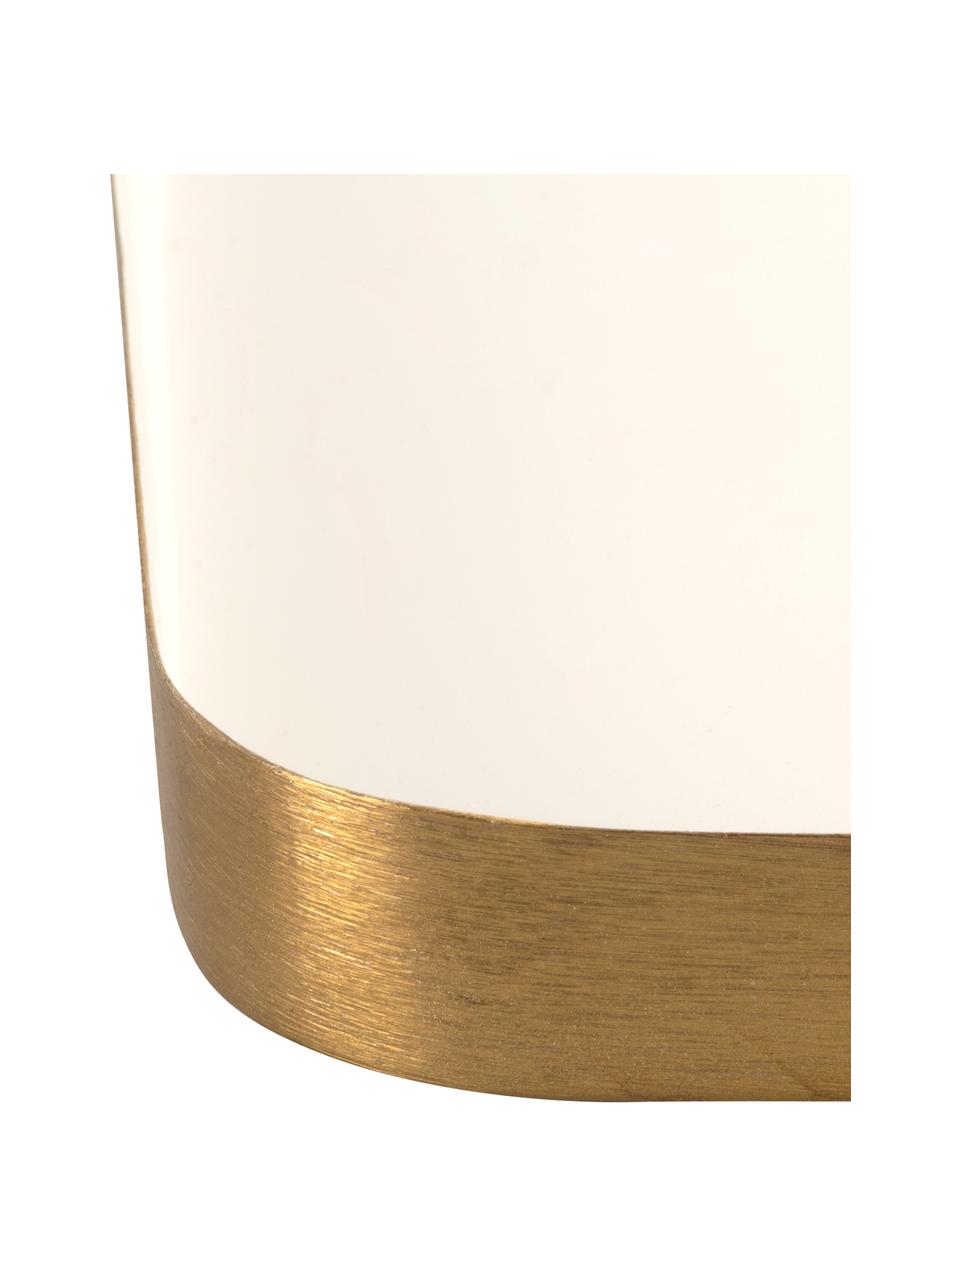 Deko-Tablett Festive mit glänzender Oberfläche in Weiß, Metall, beschichtet, Weiß, Goldfarben, L 25 x B 13 cm